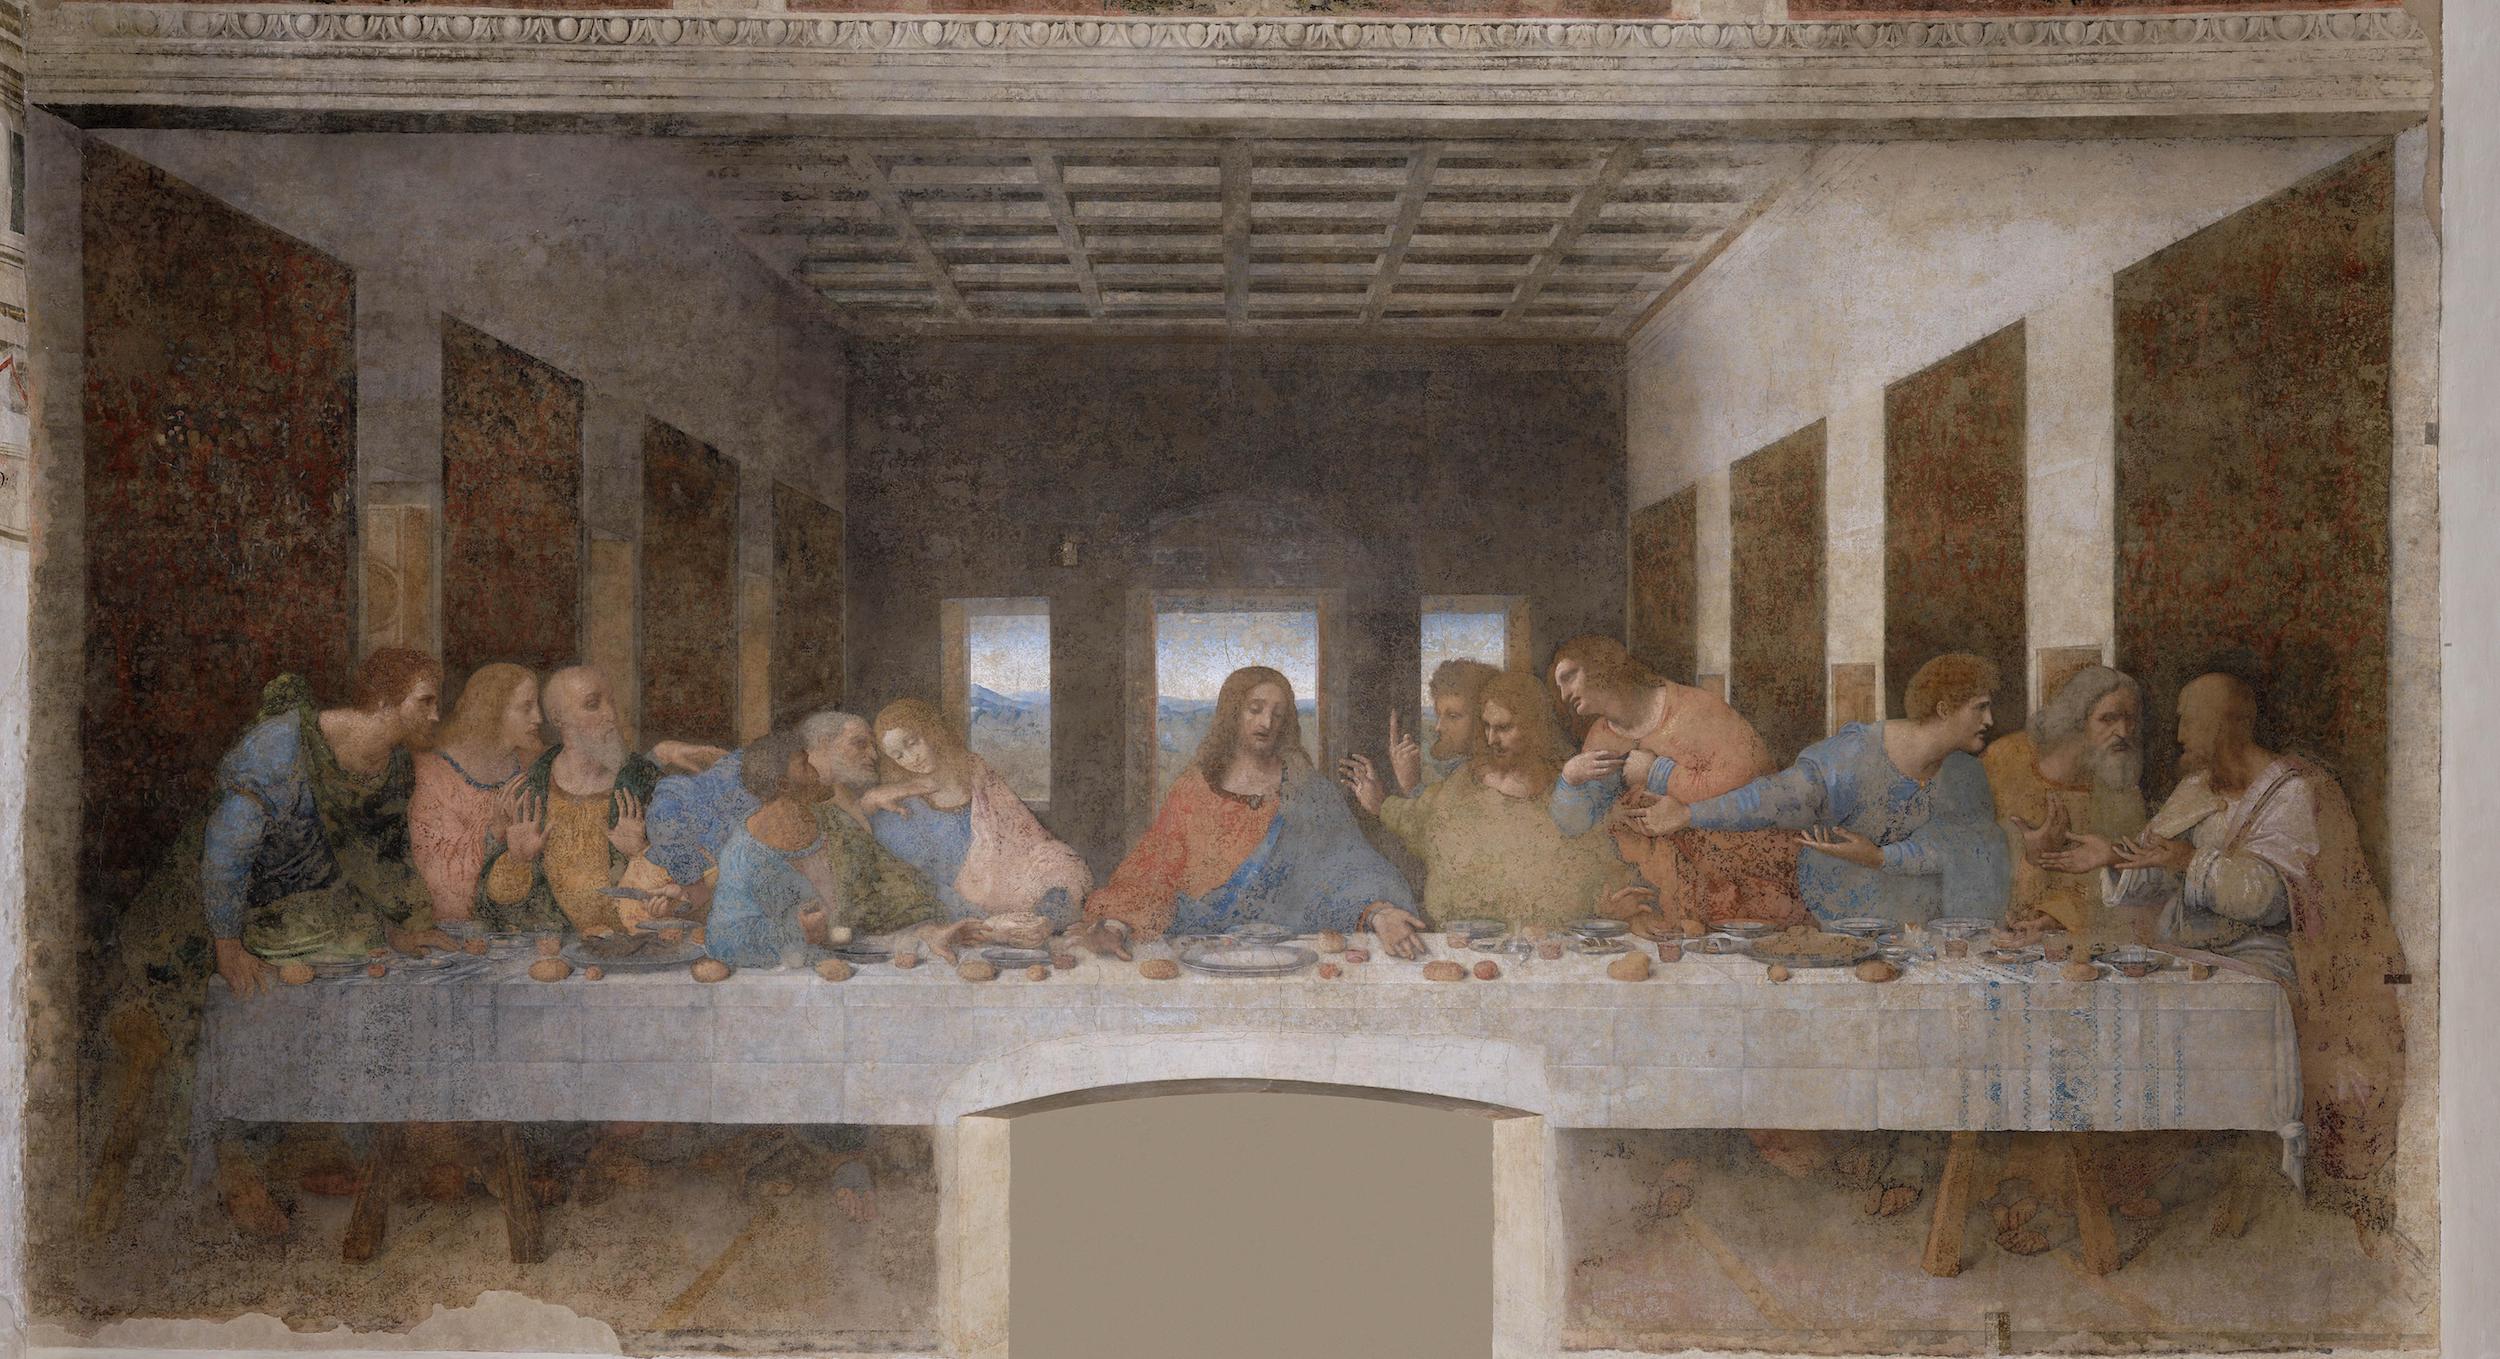 La última cena by Leonardo da Vinci - 1495-1498 - 460 x 880 cm Santa Maria delle Grazie (Santa María de las Gracias)